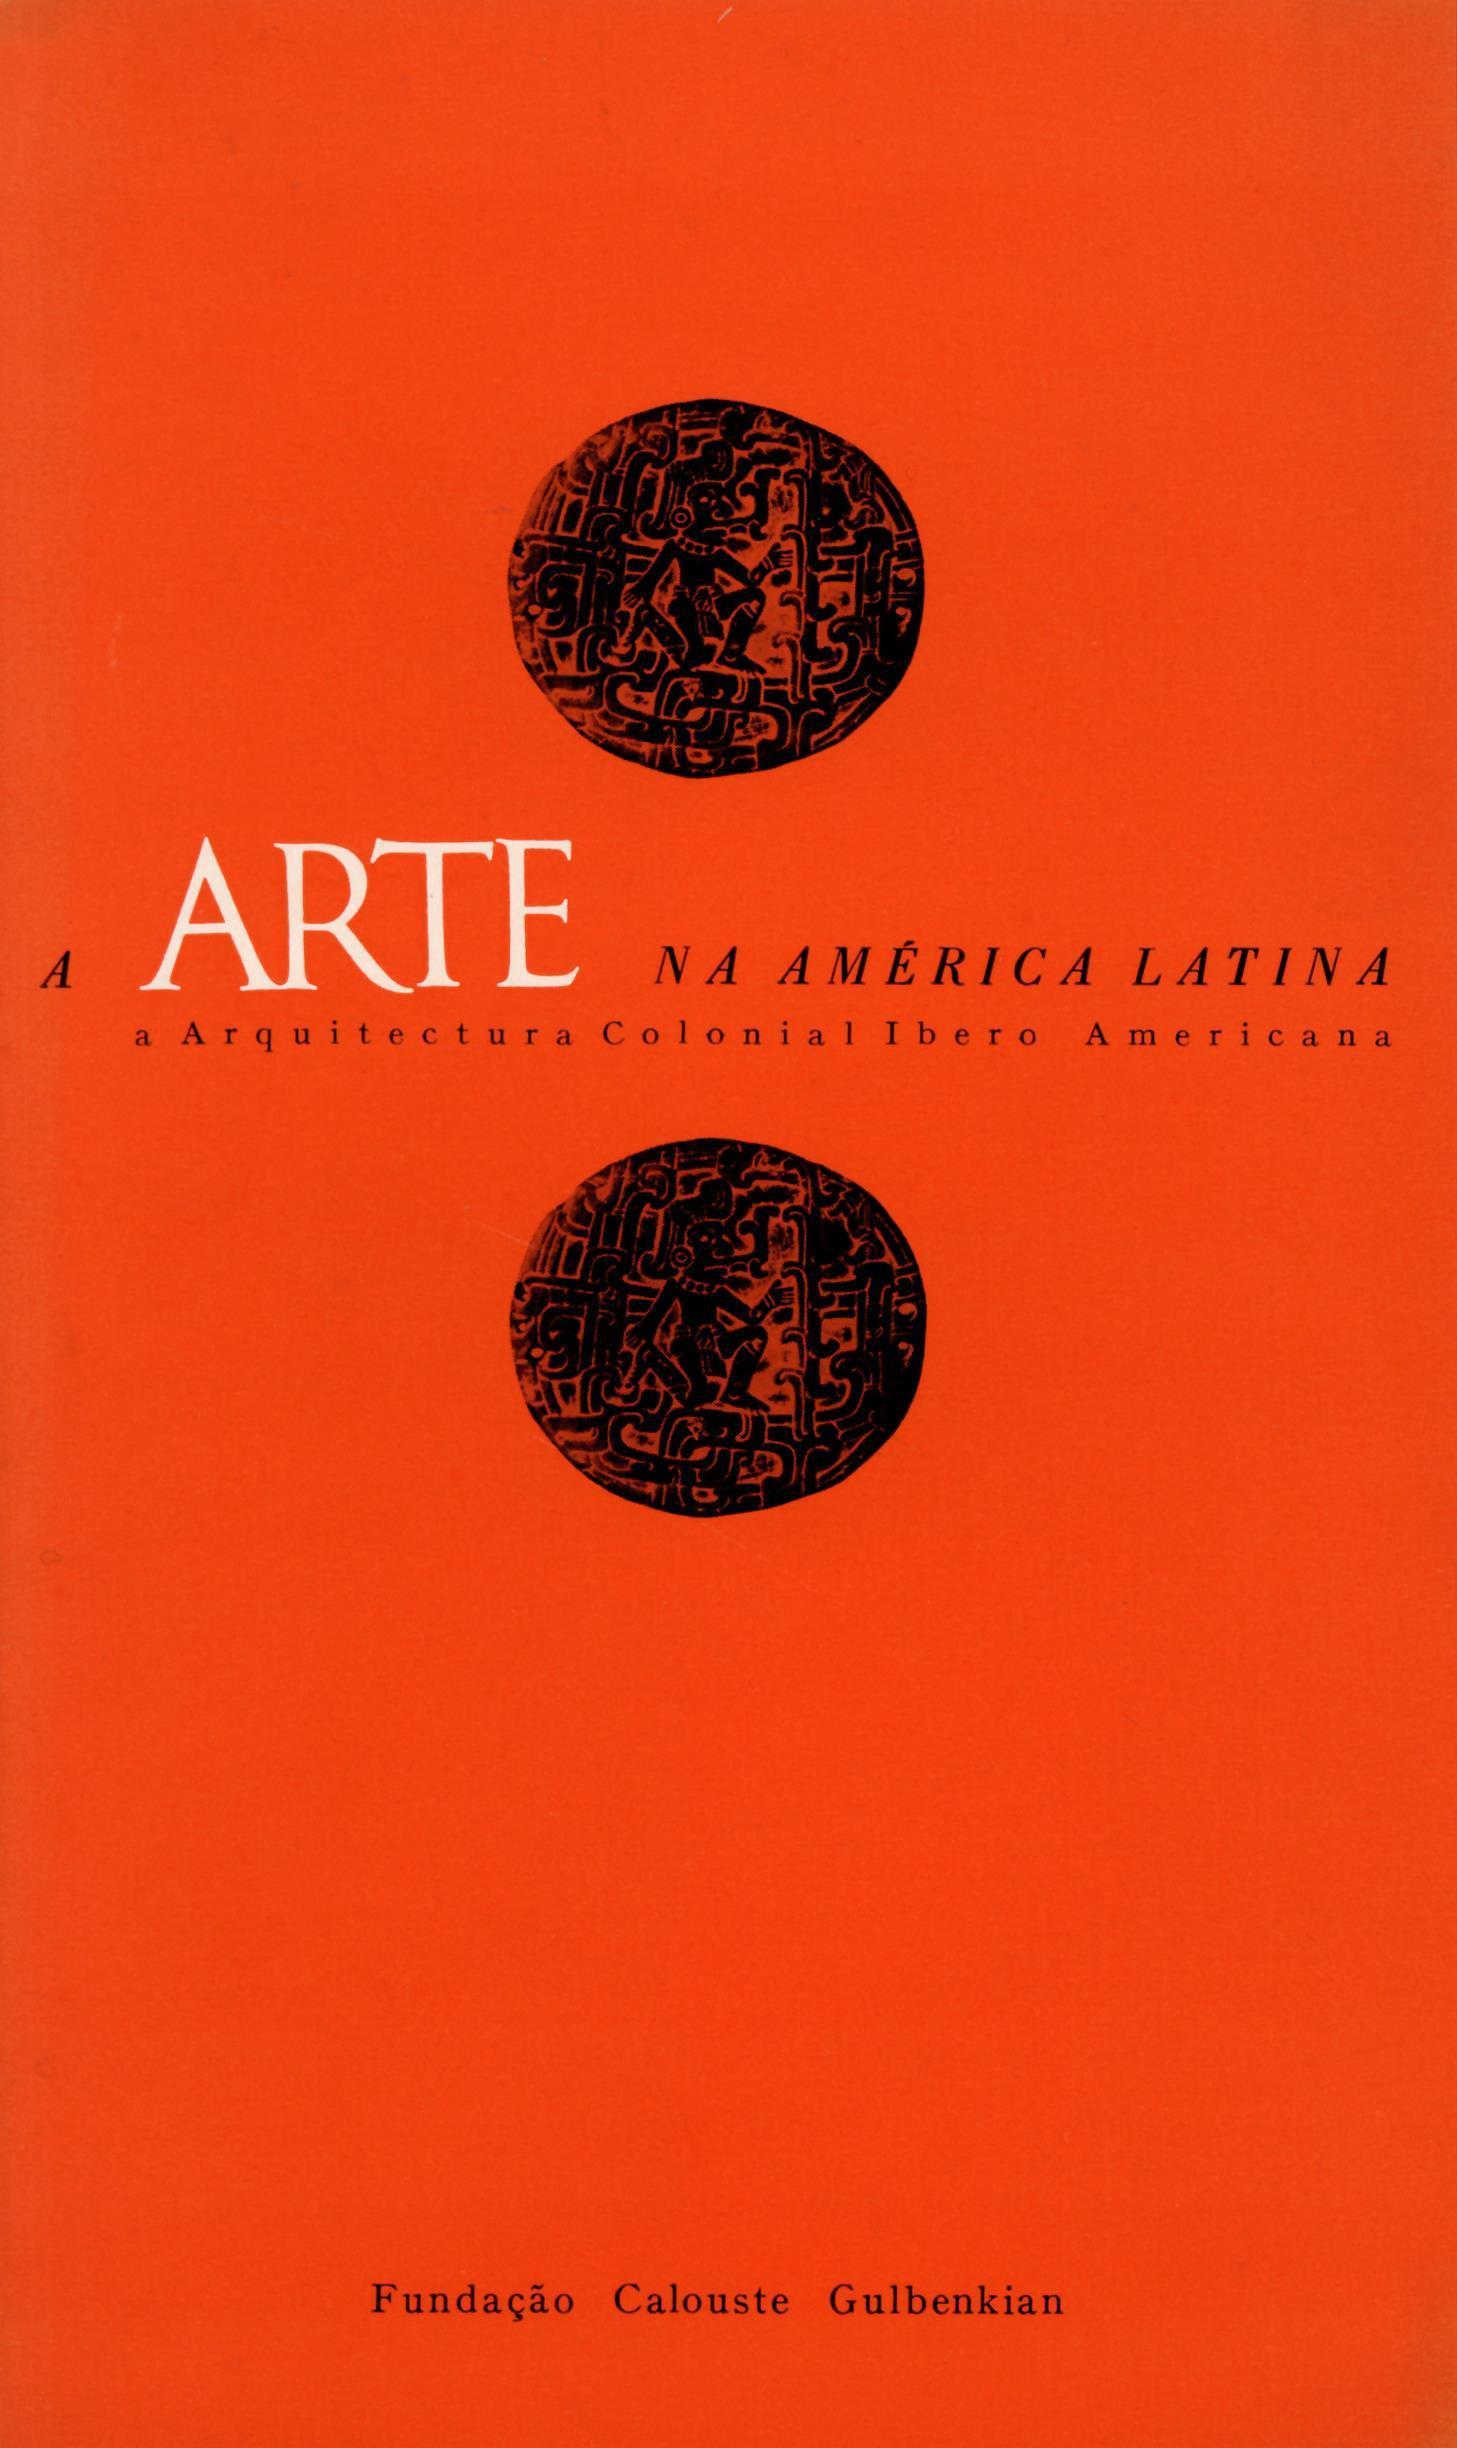 A Arte na América Latina. A Arquitectura Colonial Ibero-Americana [curso]